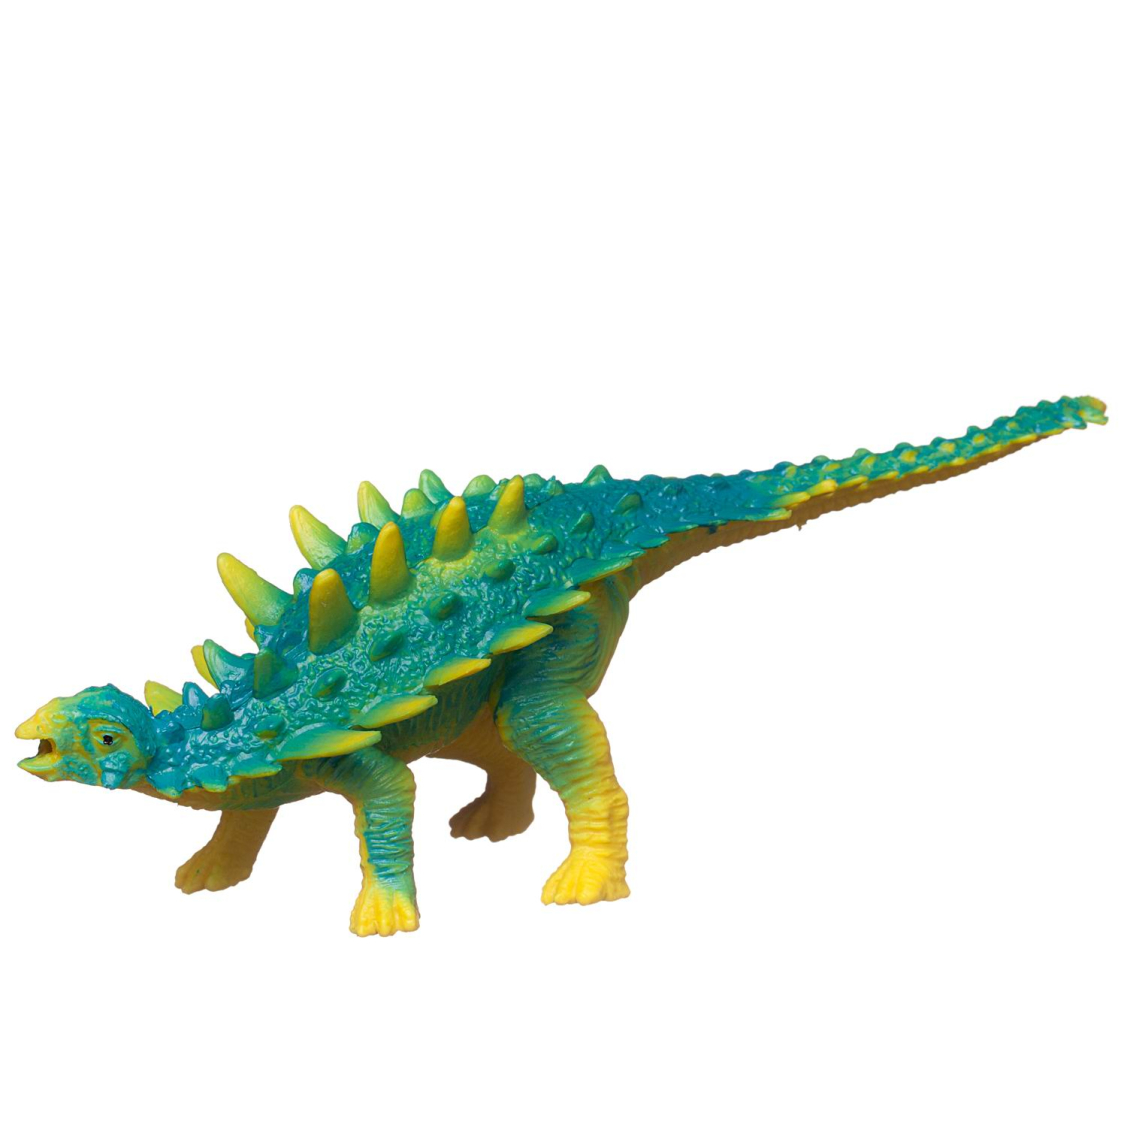 Игровой набор ABtoys Юный натуралист Динозавры: Кентозавр против Птеродактиля